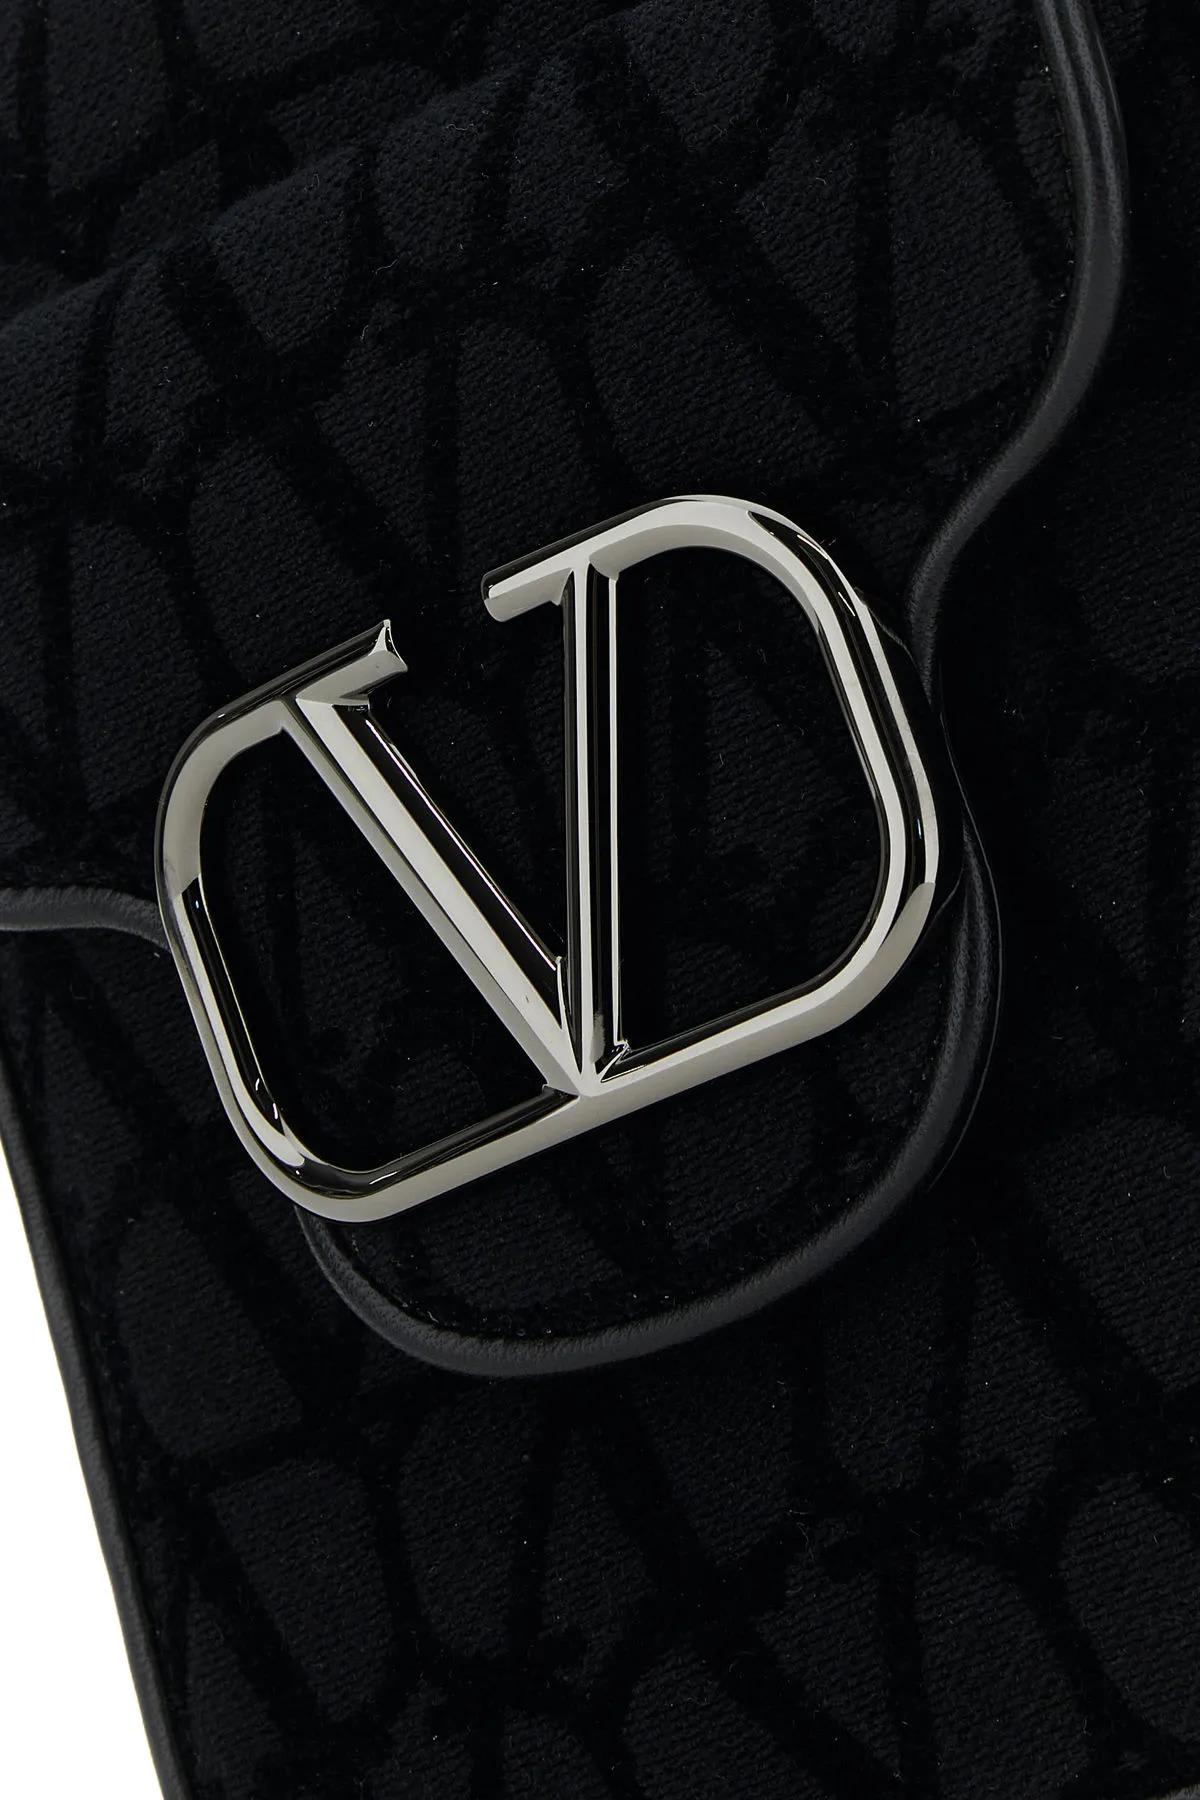 Valentino Garavani Mini Locó Toile Iconographe Cross-body Bag - Multi - One Size